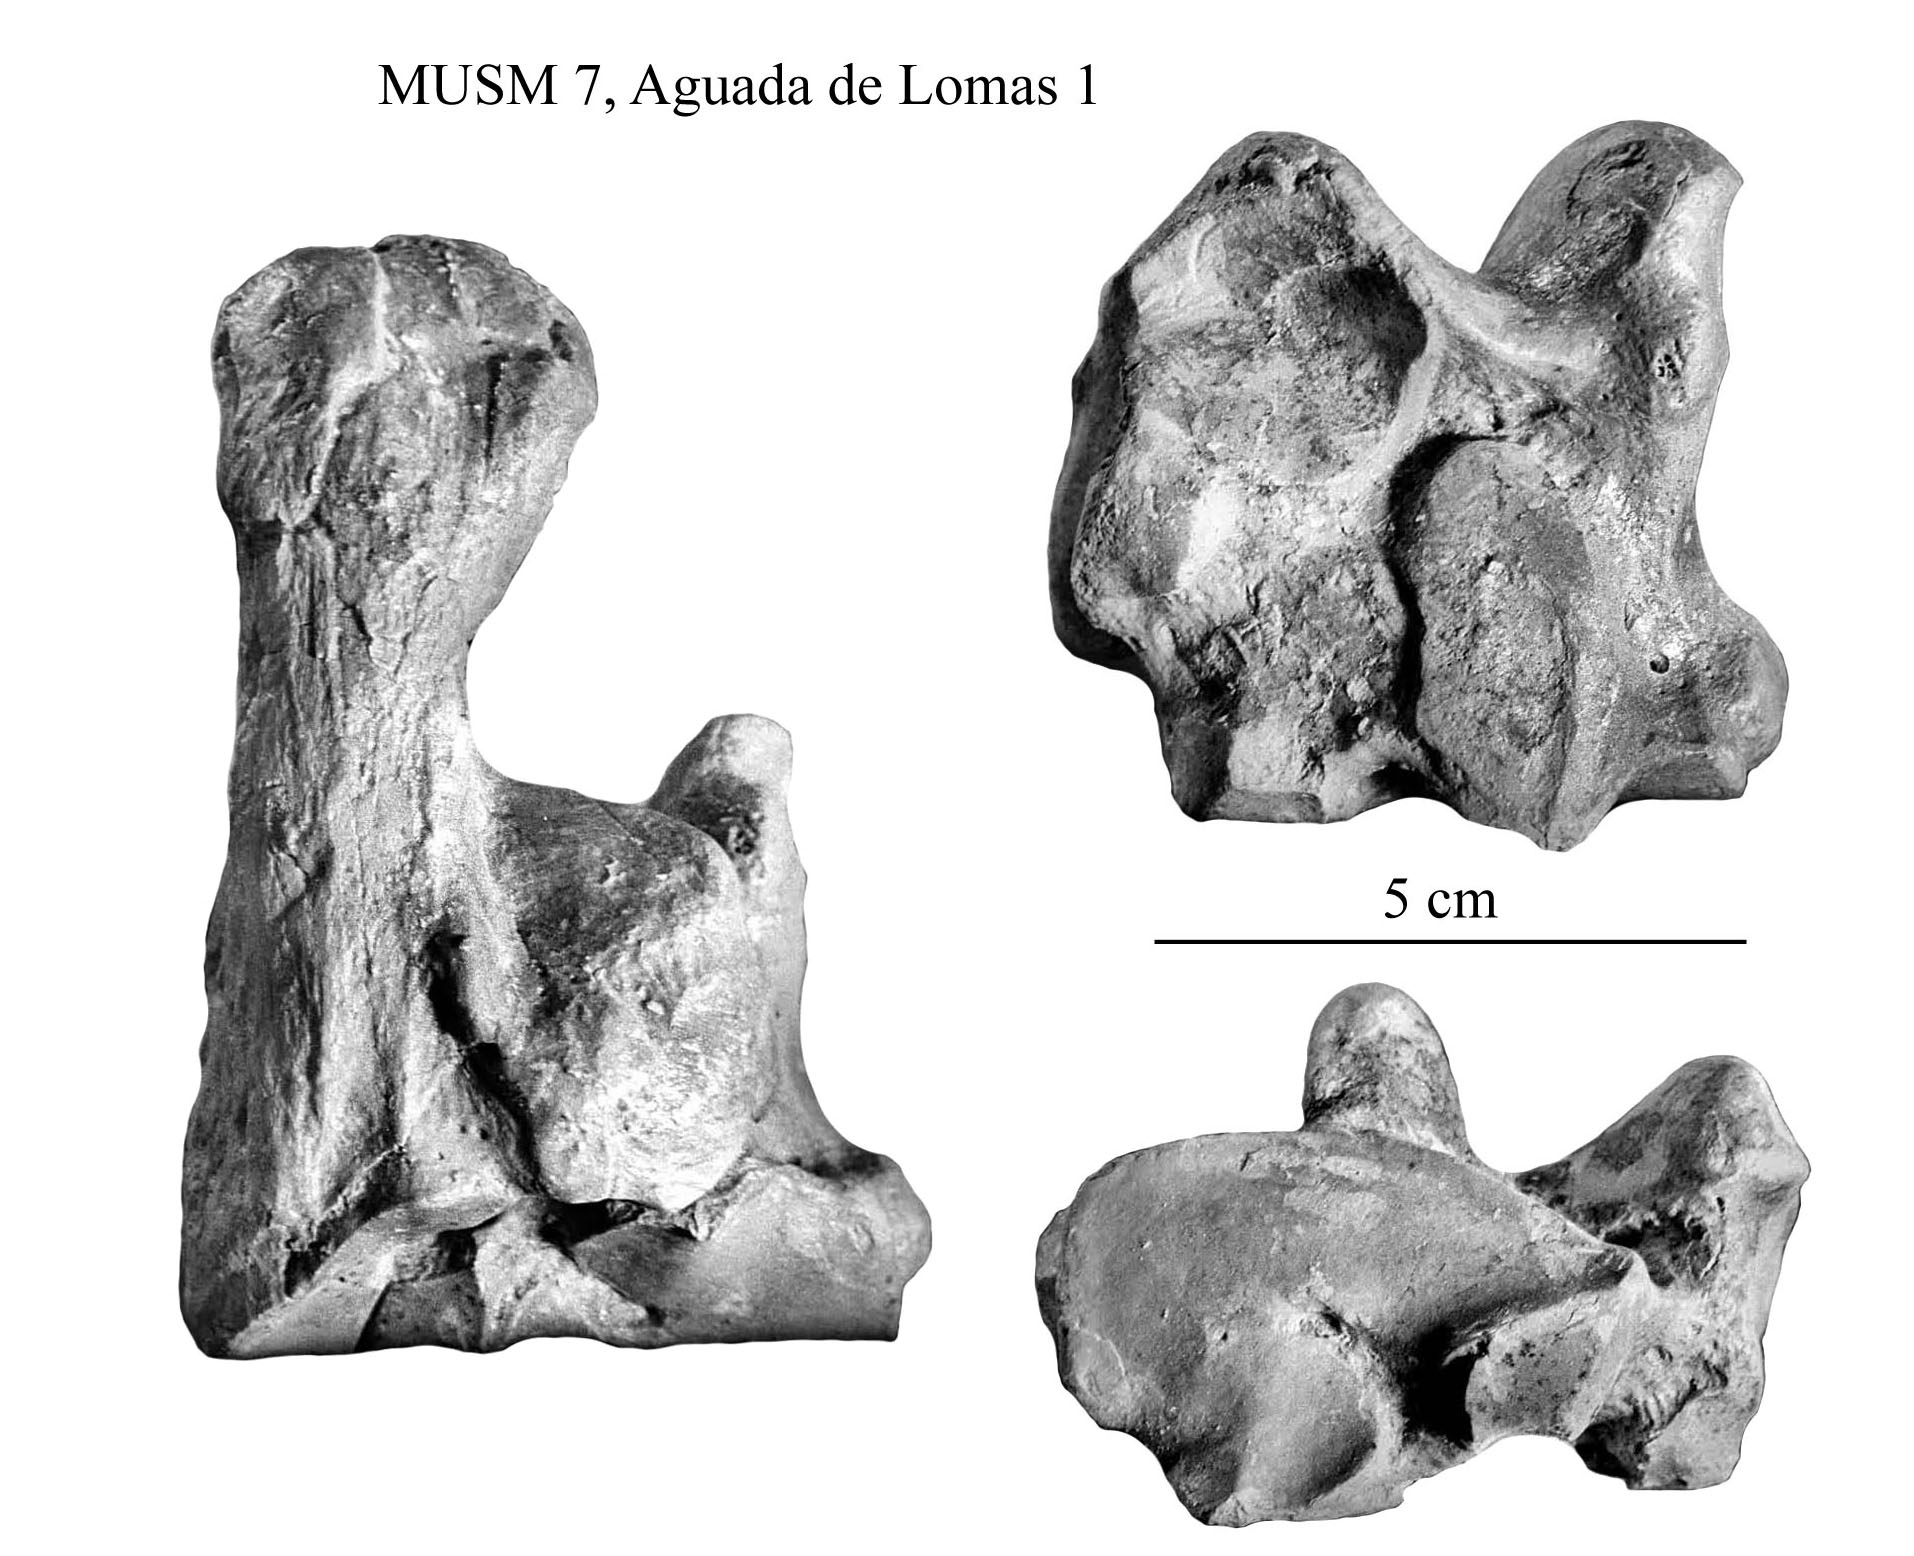 90 Exclusive Spanish Guy Jordi Plays With Latina Boobs - Equus (Amerhipus) insulatus from Peru: MUSM 7, cranium and limb ...